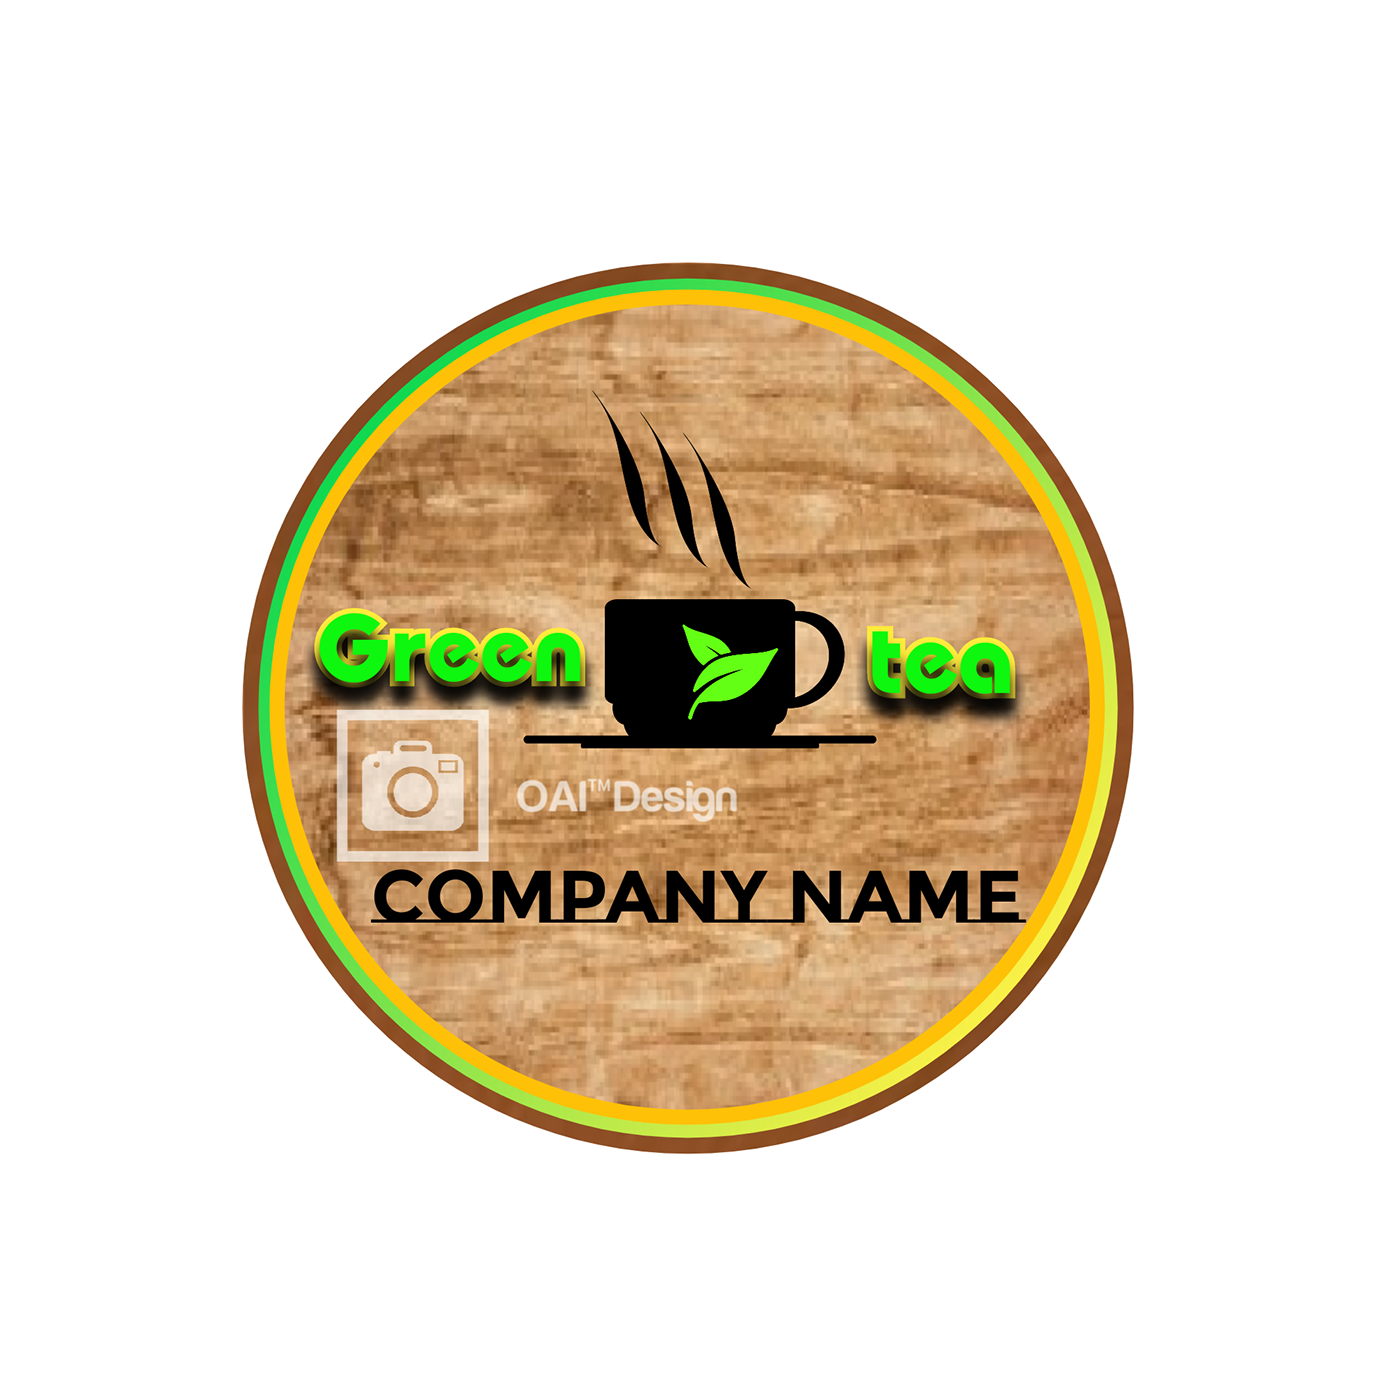 #Design #greentea #Logo #tea